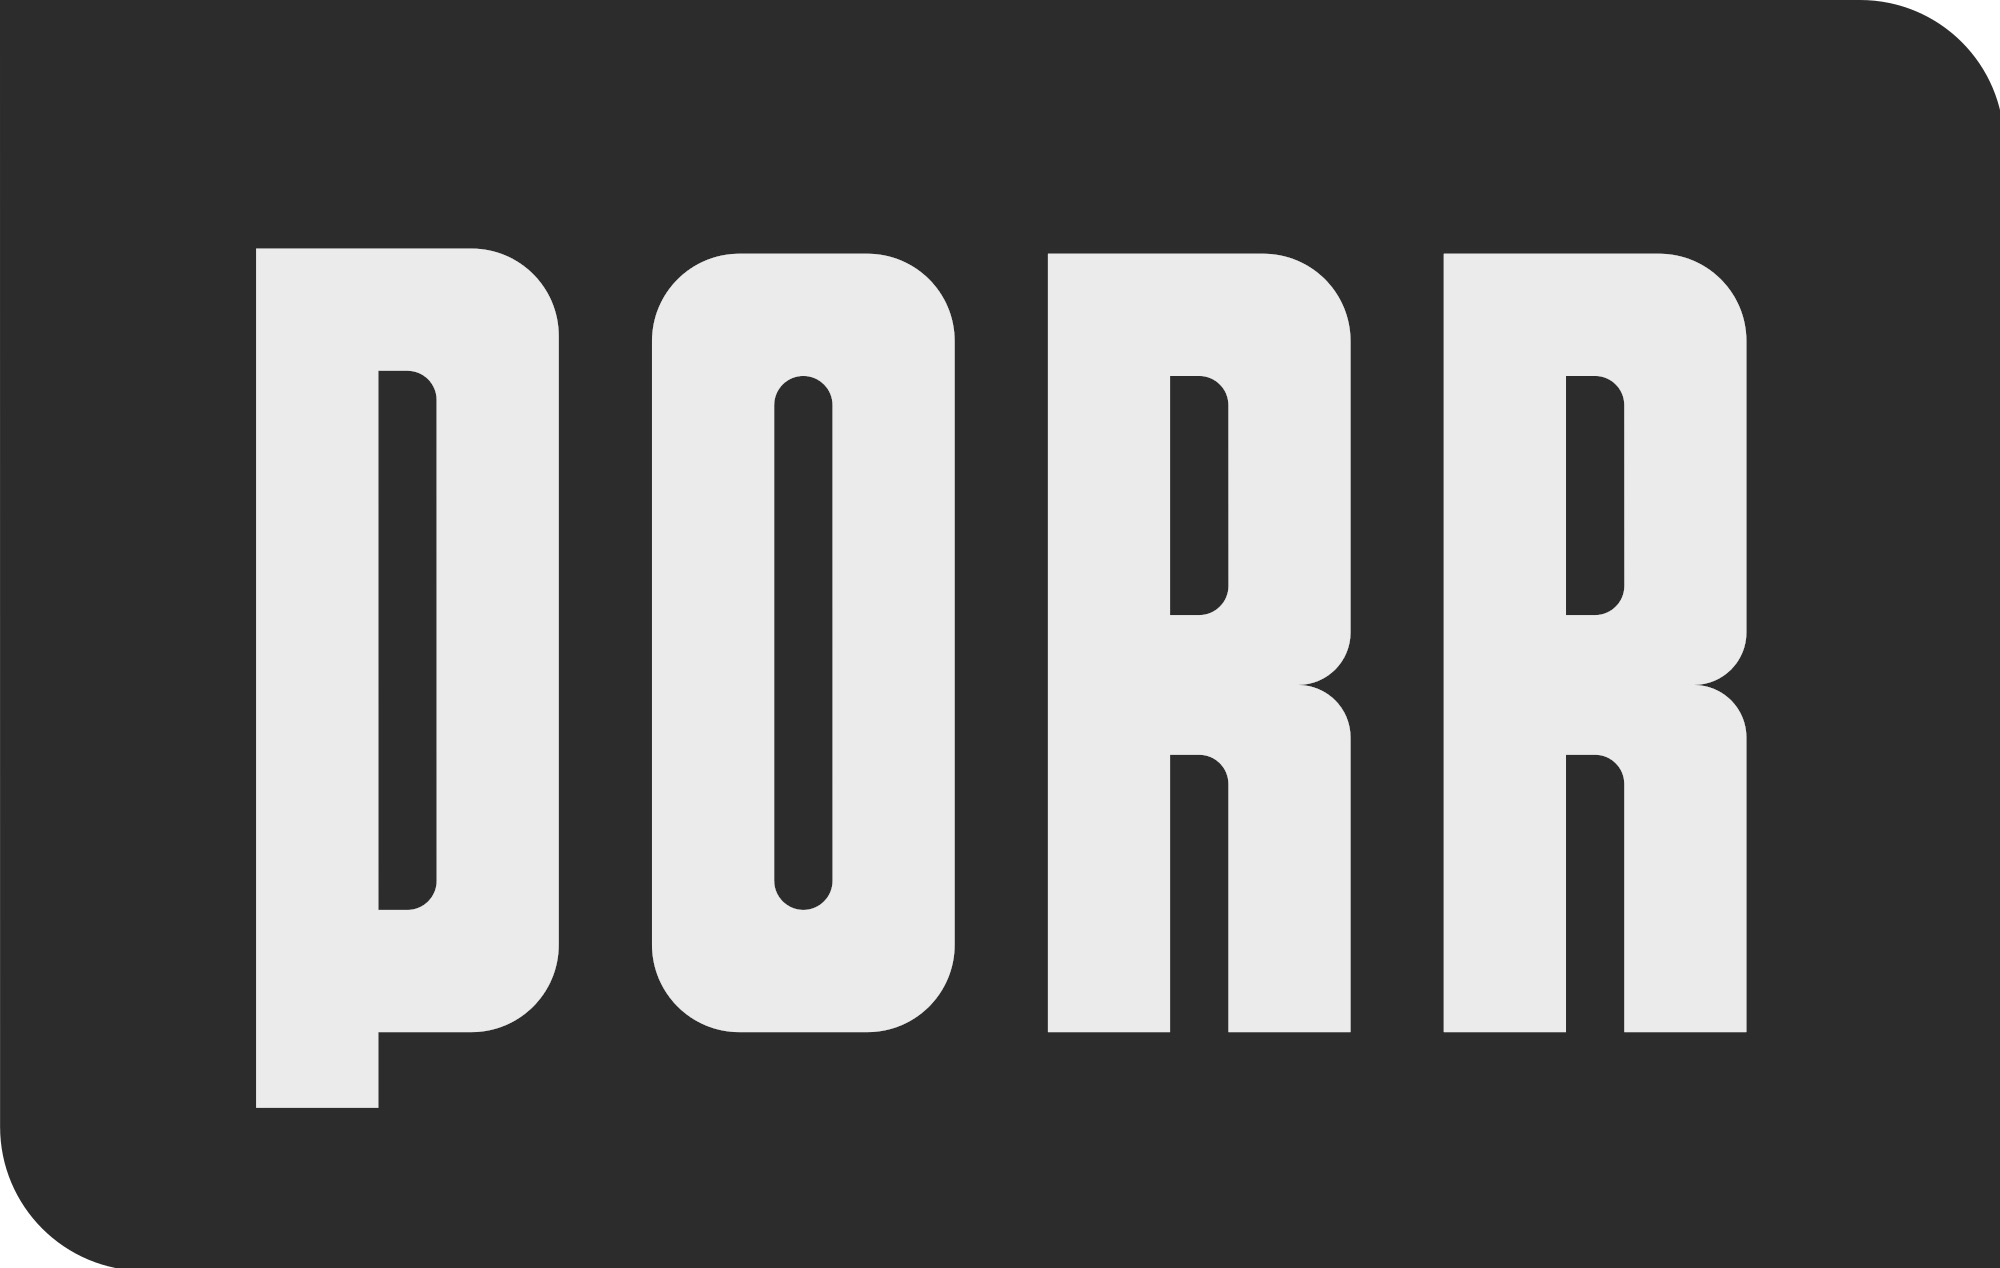 PORR Logo